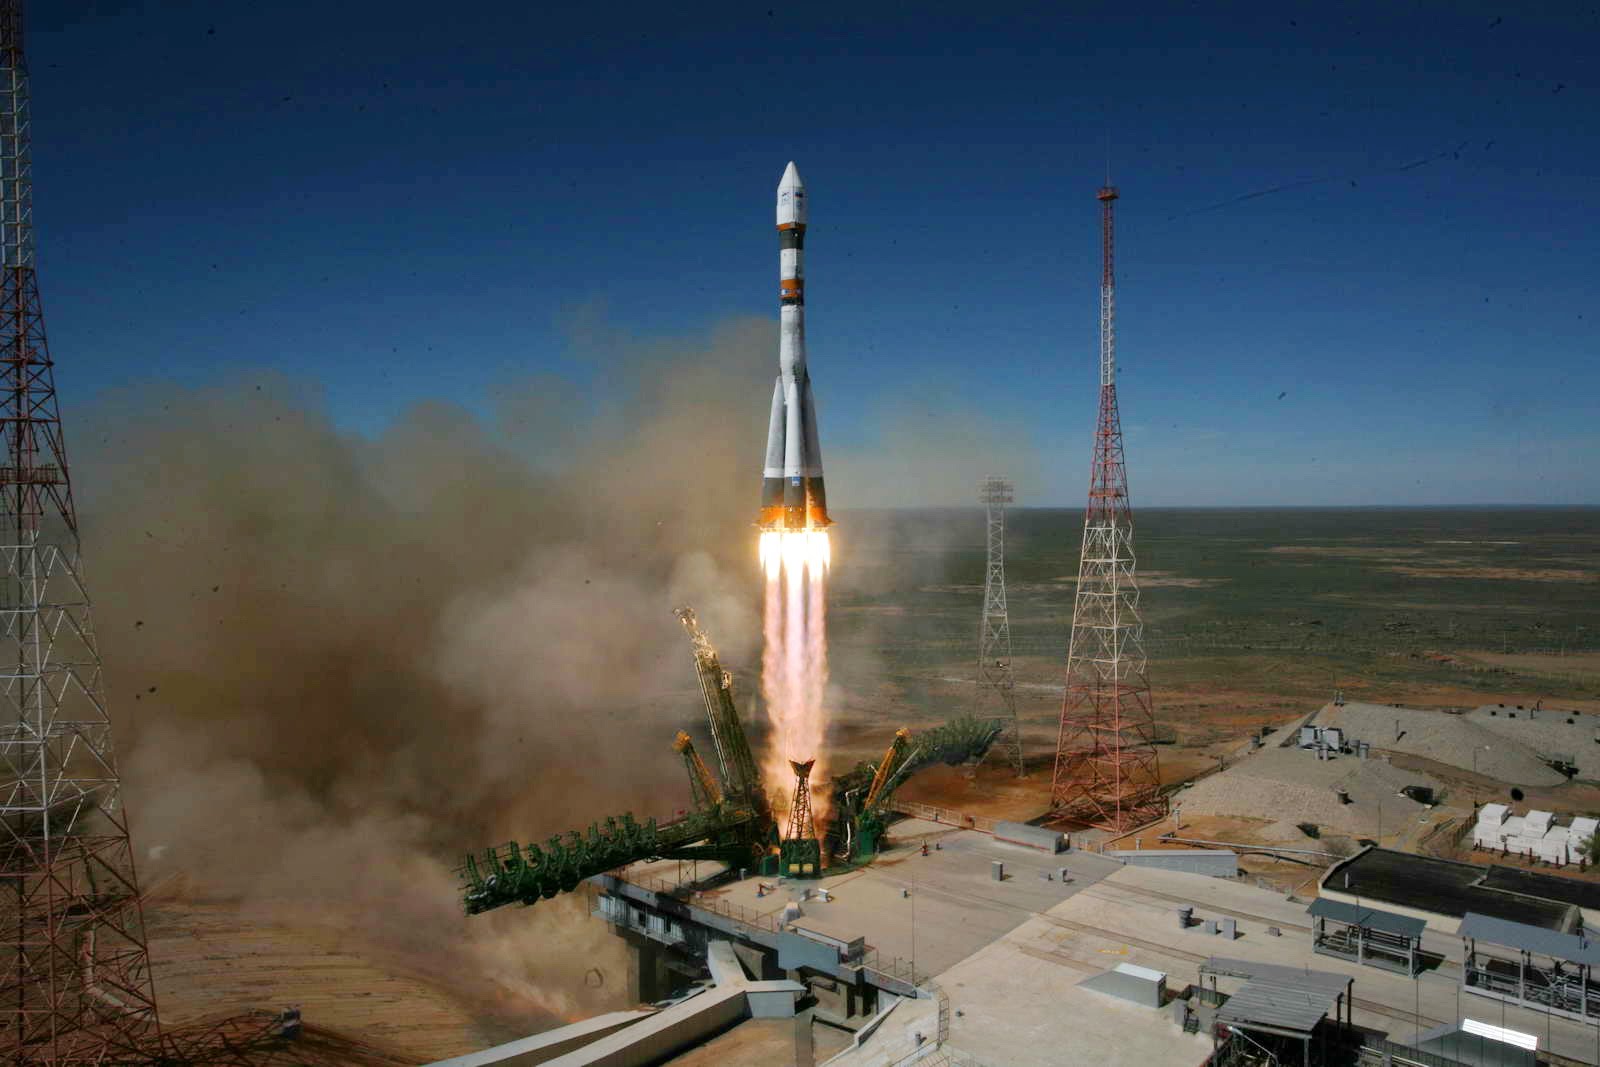  الصاروخ الحامل للقمر الصناعى المصرى الجديد إلى الفضاء (1)